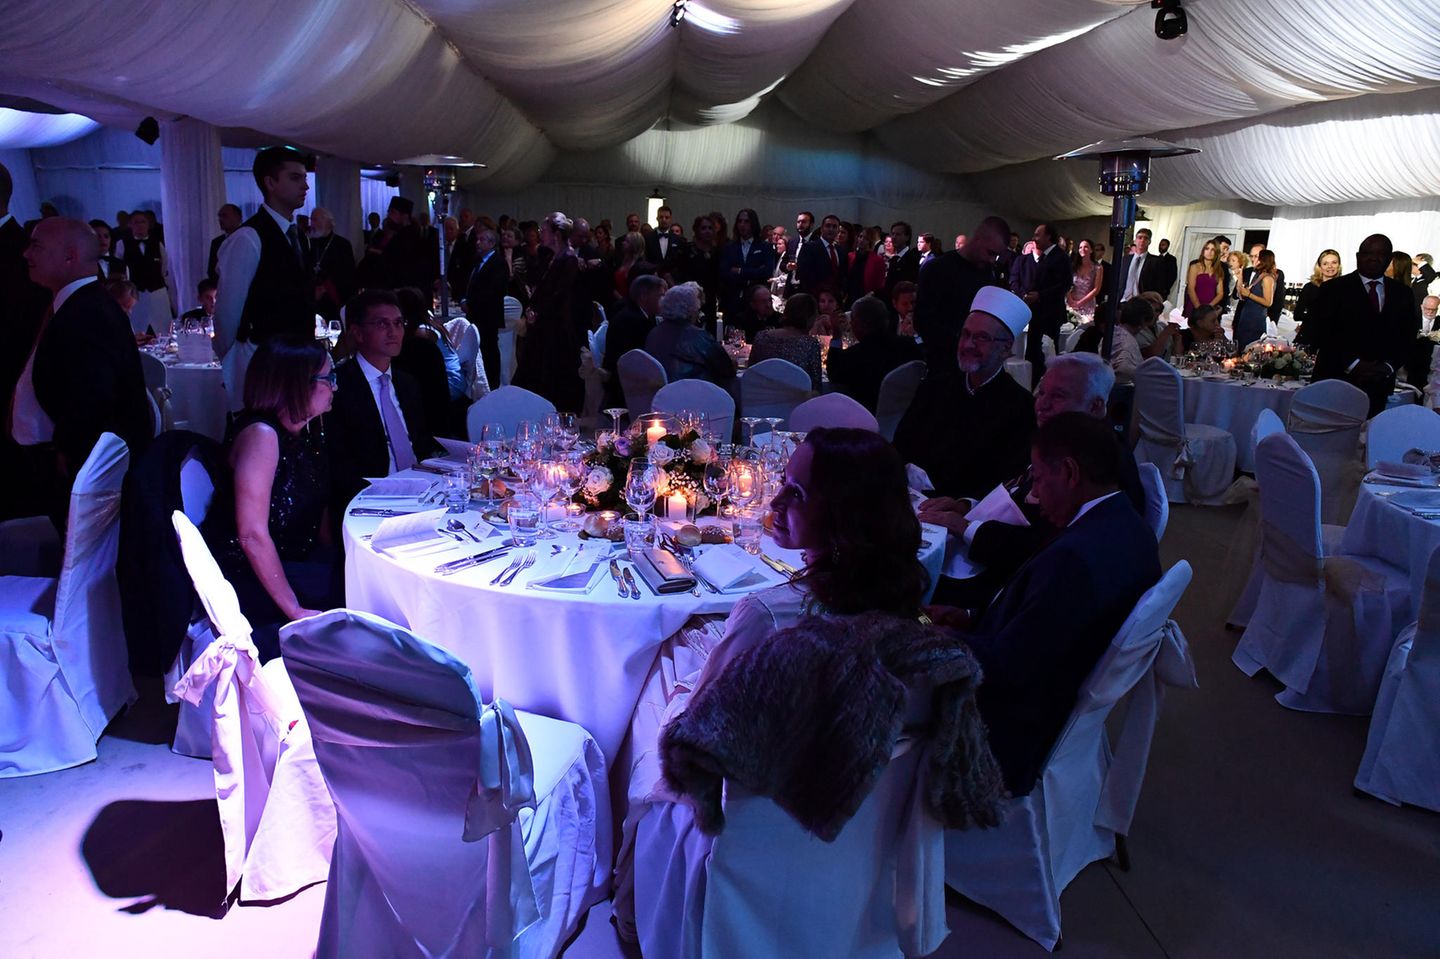 Die Gäste sitzen während der Feier an großen runden Tischen, der Raum ist mit einem Baldachin ausgekleidet und in blaues Licht getaucht. Die romantische Atmosphäre entsteht durch Kerzenschein  und Rosengedecke.